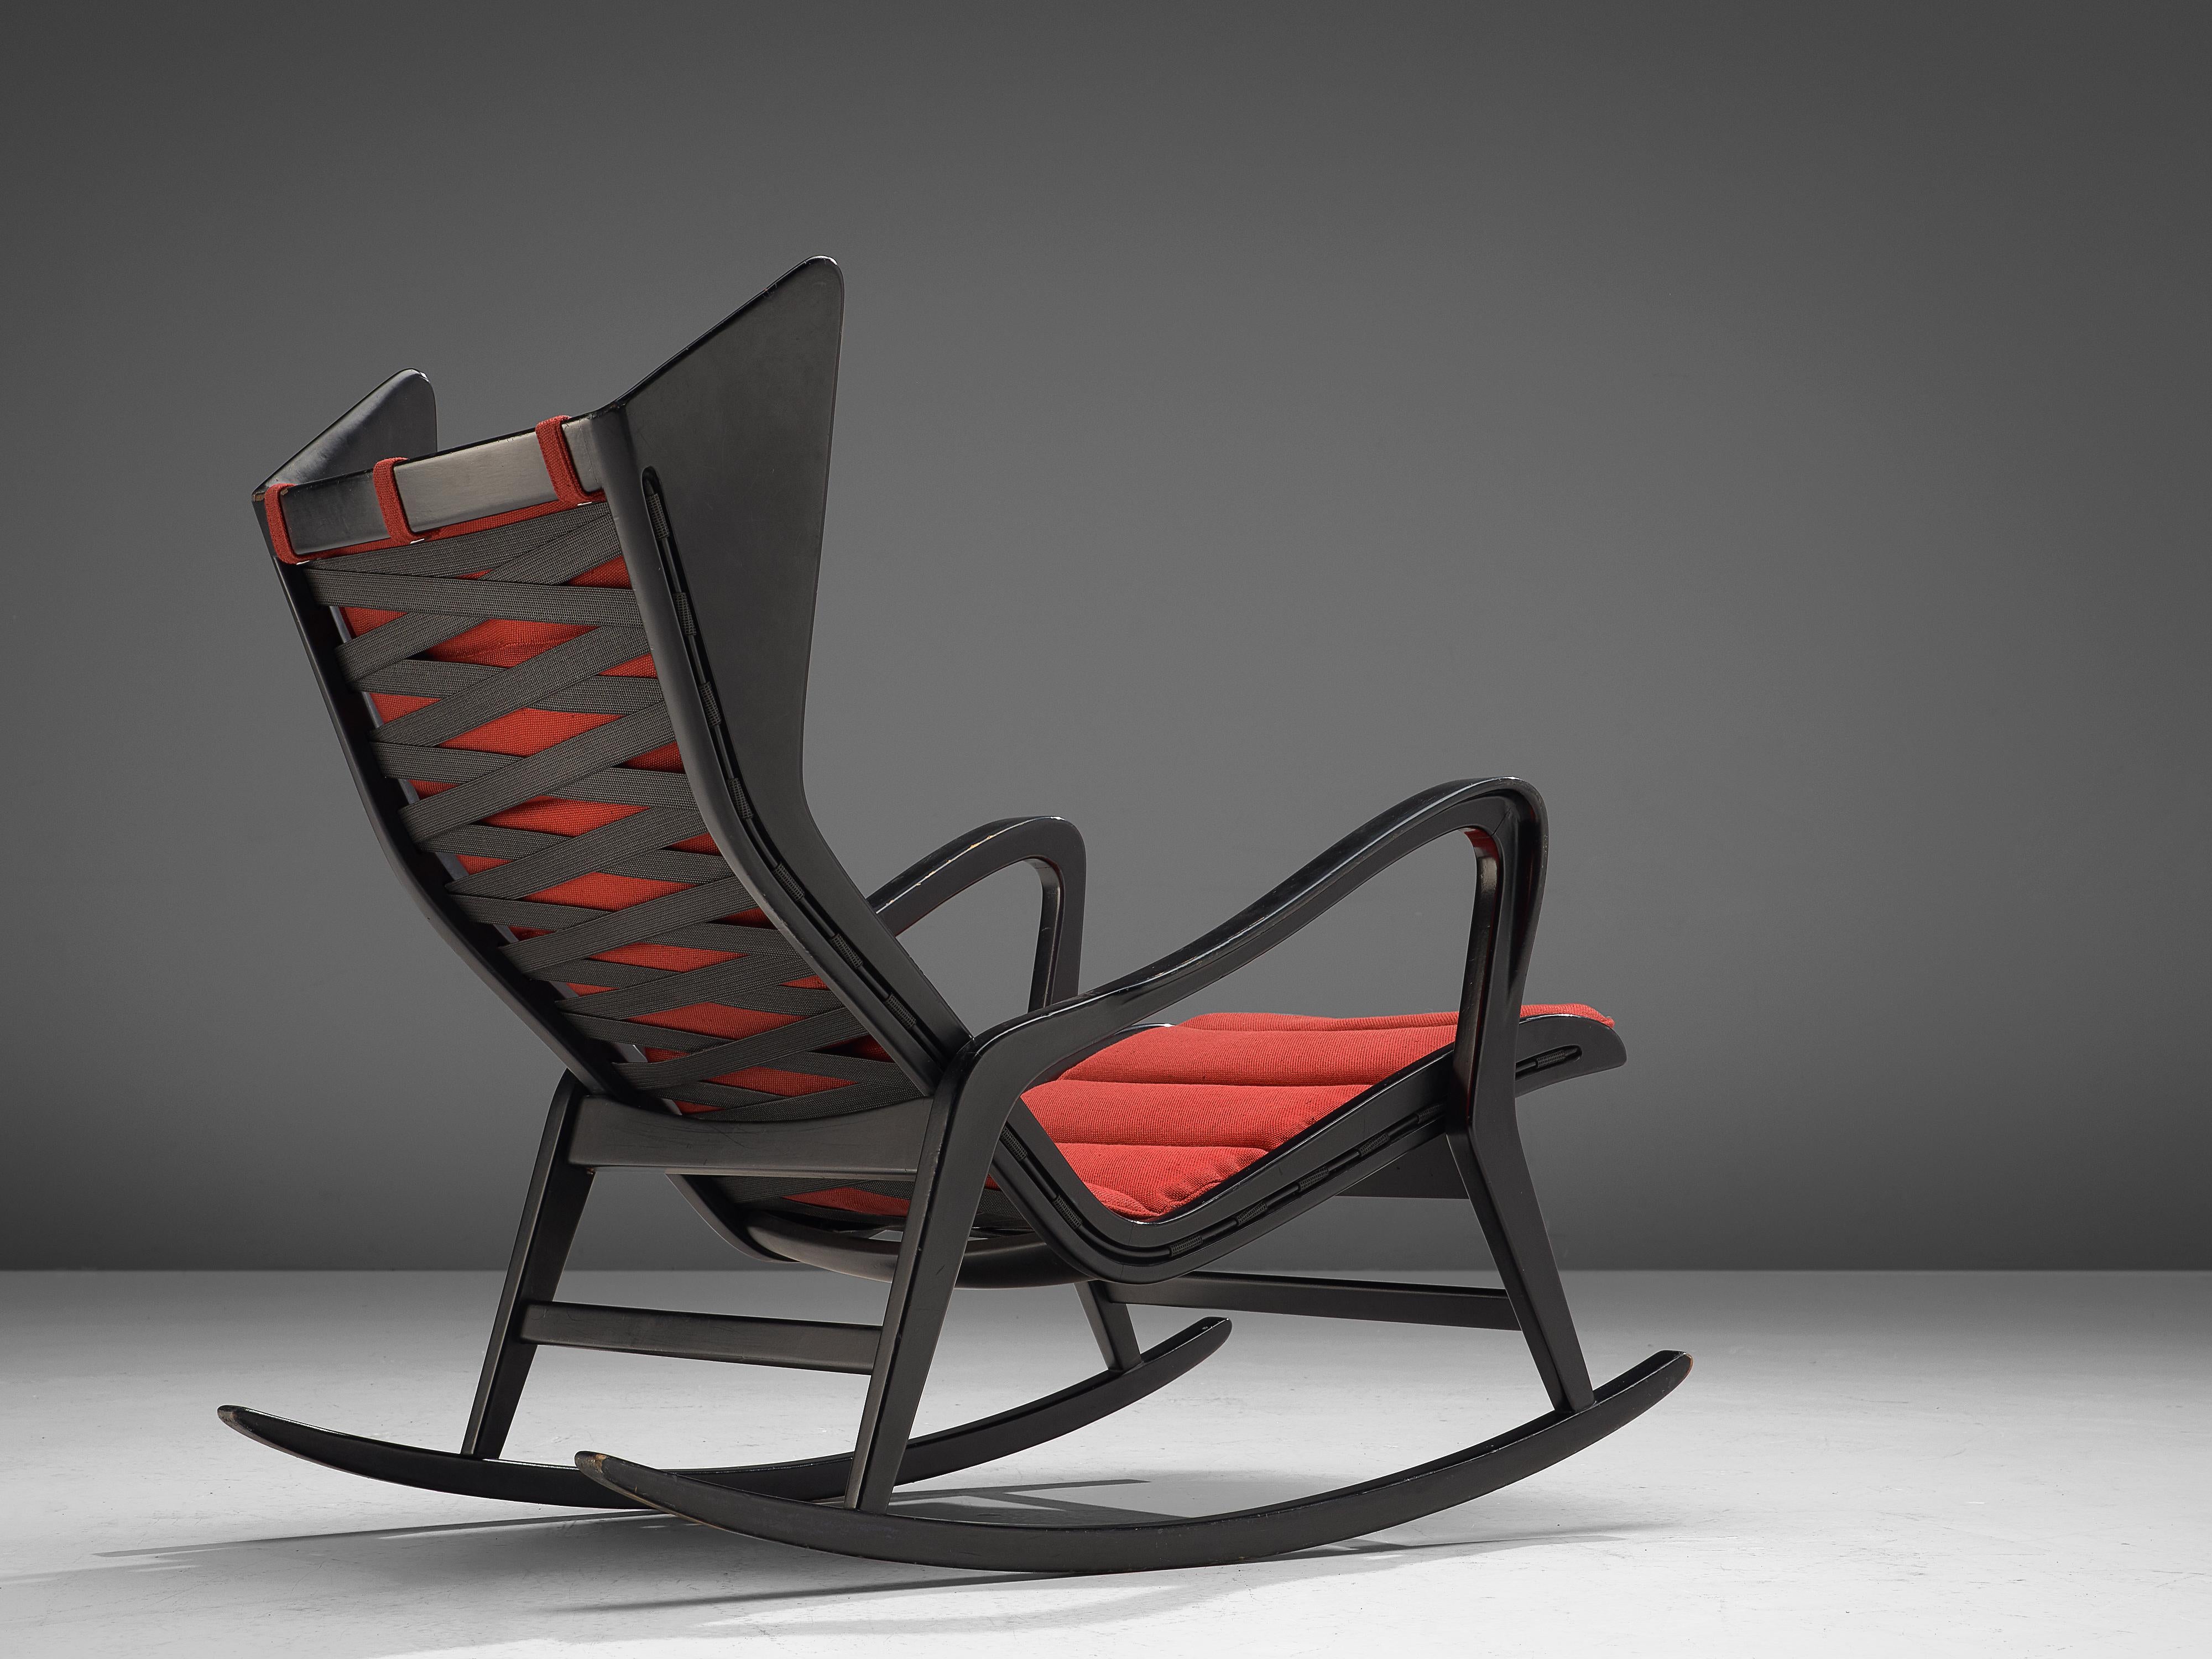 Cassina, Loungesessel Modell 572, gedunkeltes Holz und roter Stoff, Italien, 1950er Jahre.

Dieser Schaukelstuhl aus ebonisiertem Holz wird von der italienischen Firma Cassina entworfen und hergestellt. Dieser Stuhl ist der Inbegriff des